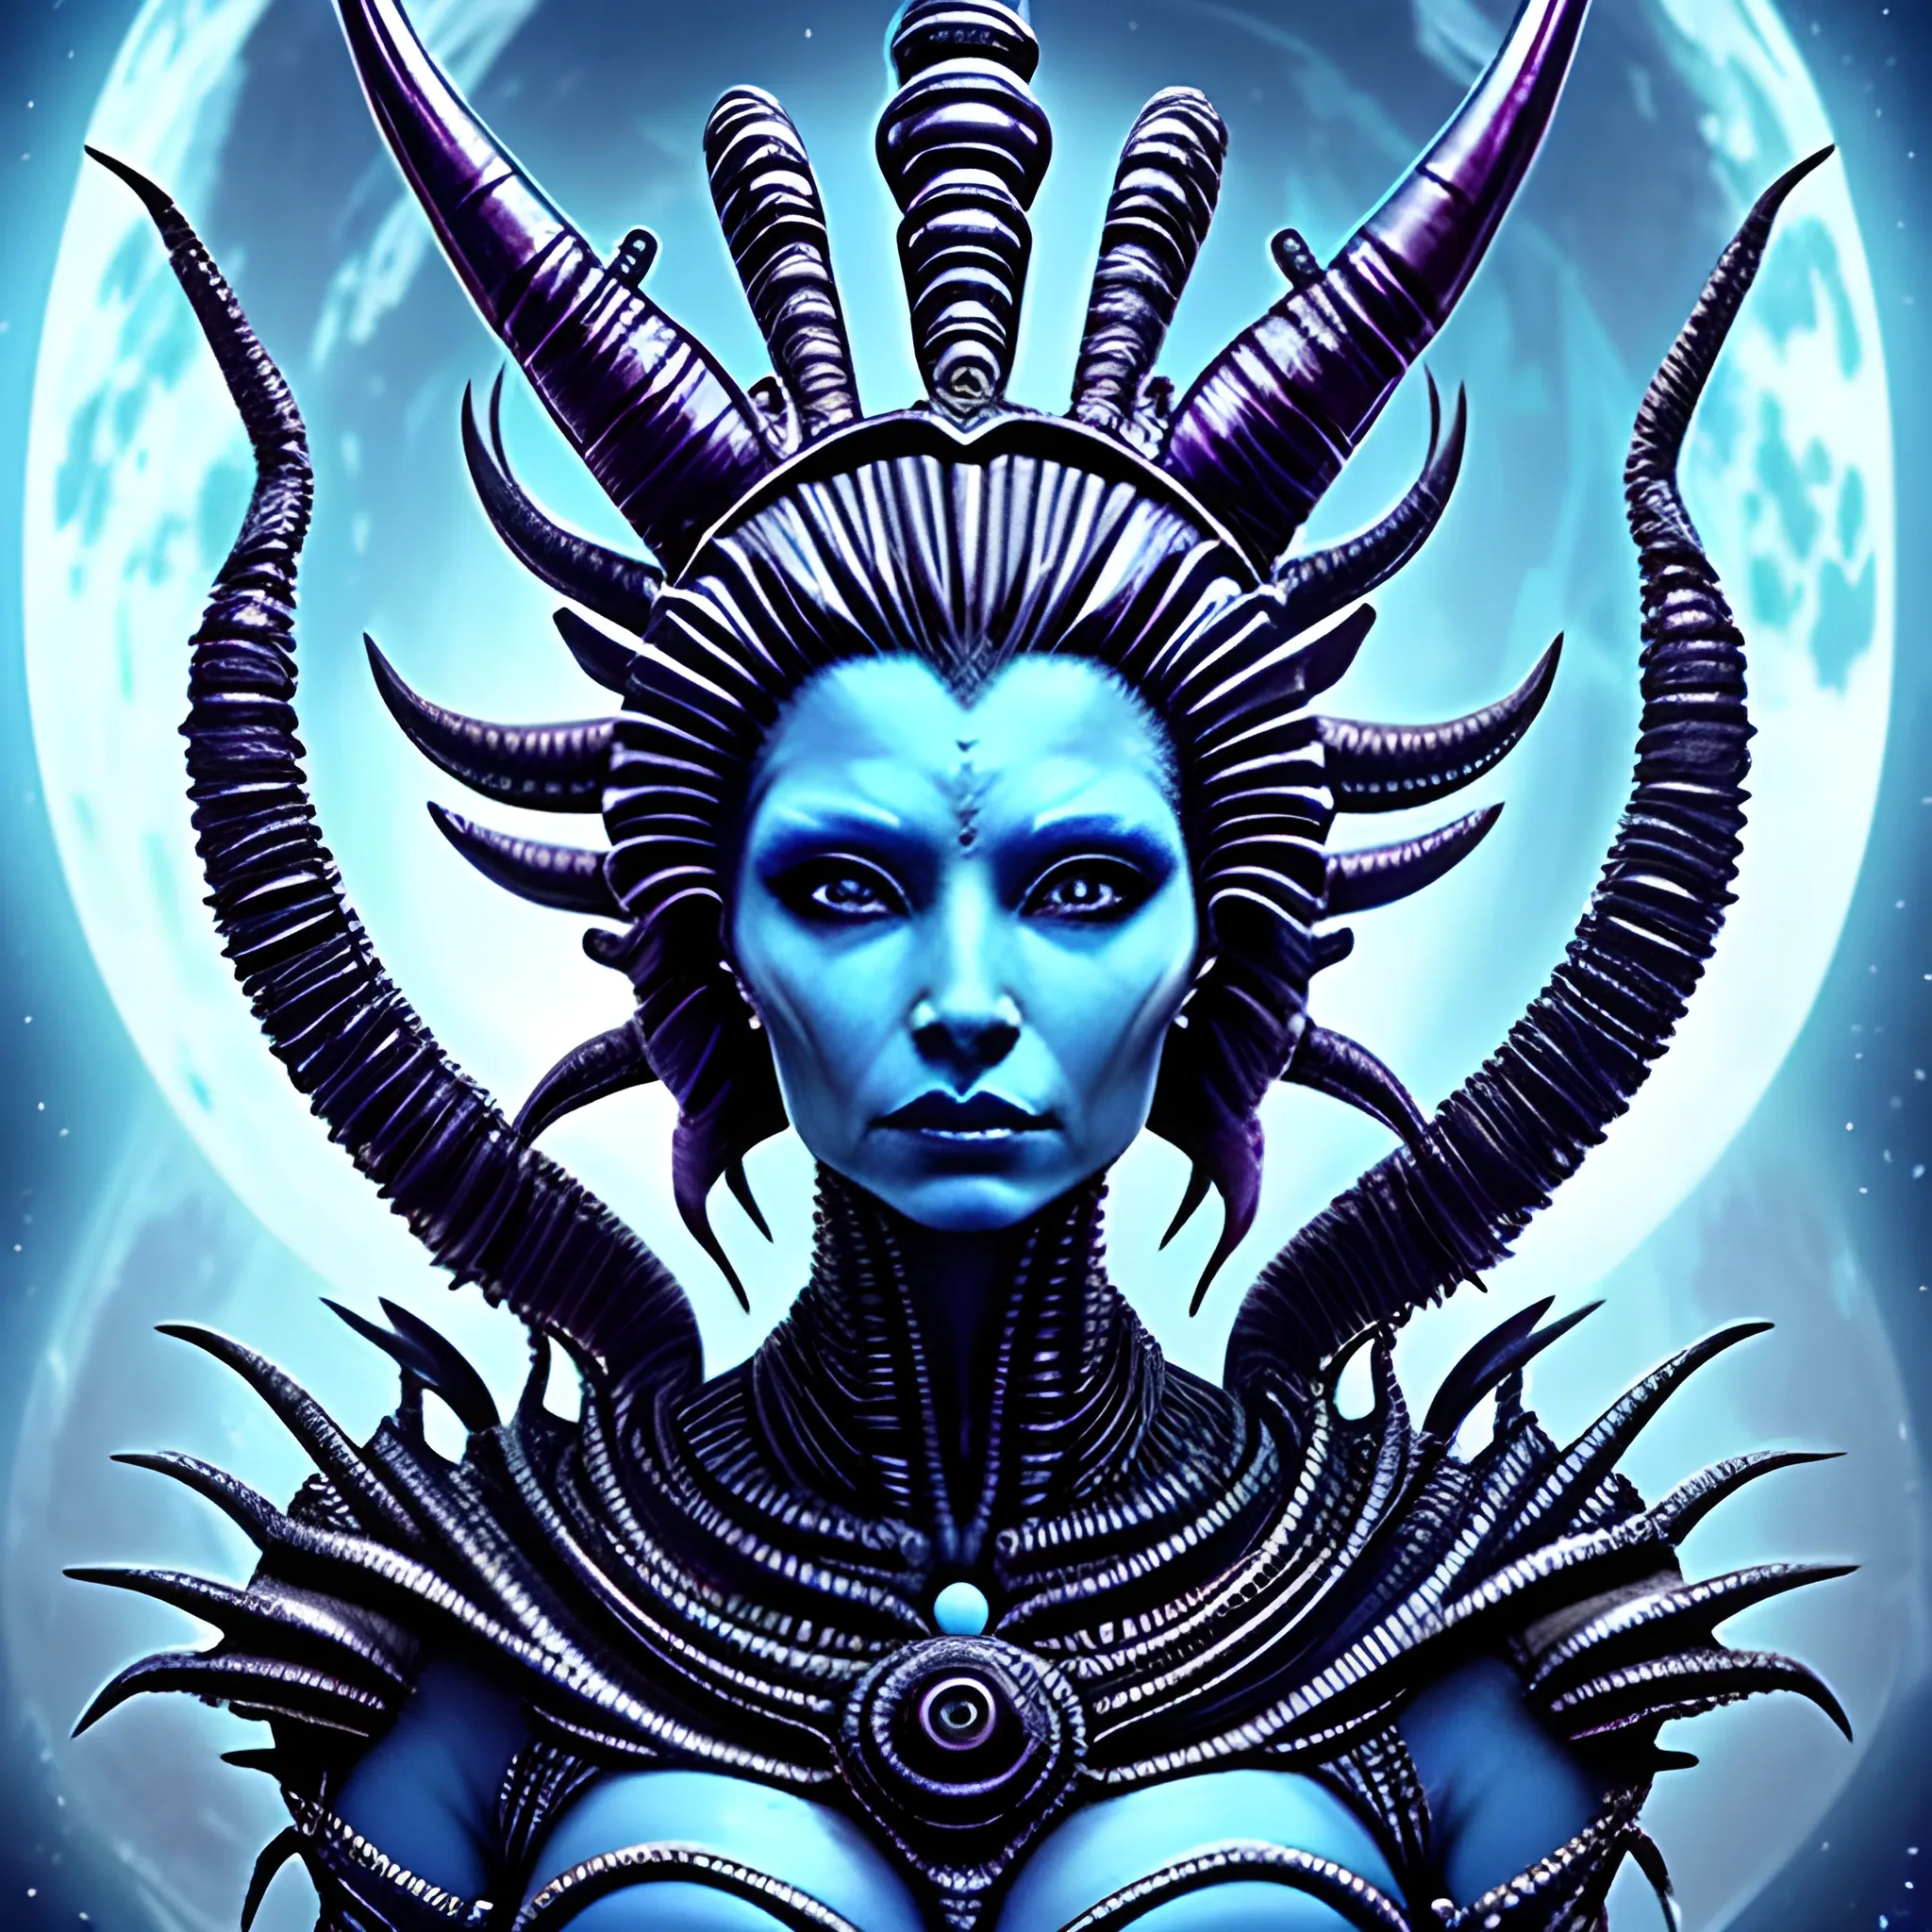 Alien queen goddess intense ruler powerful creature beautiful